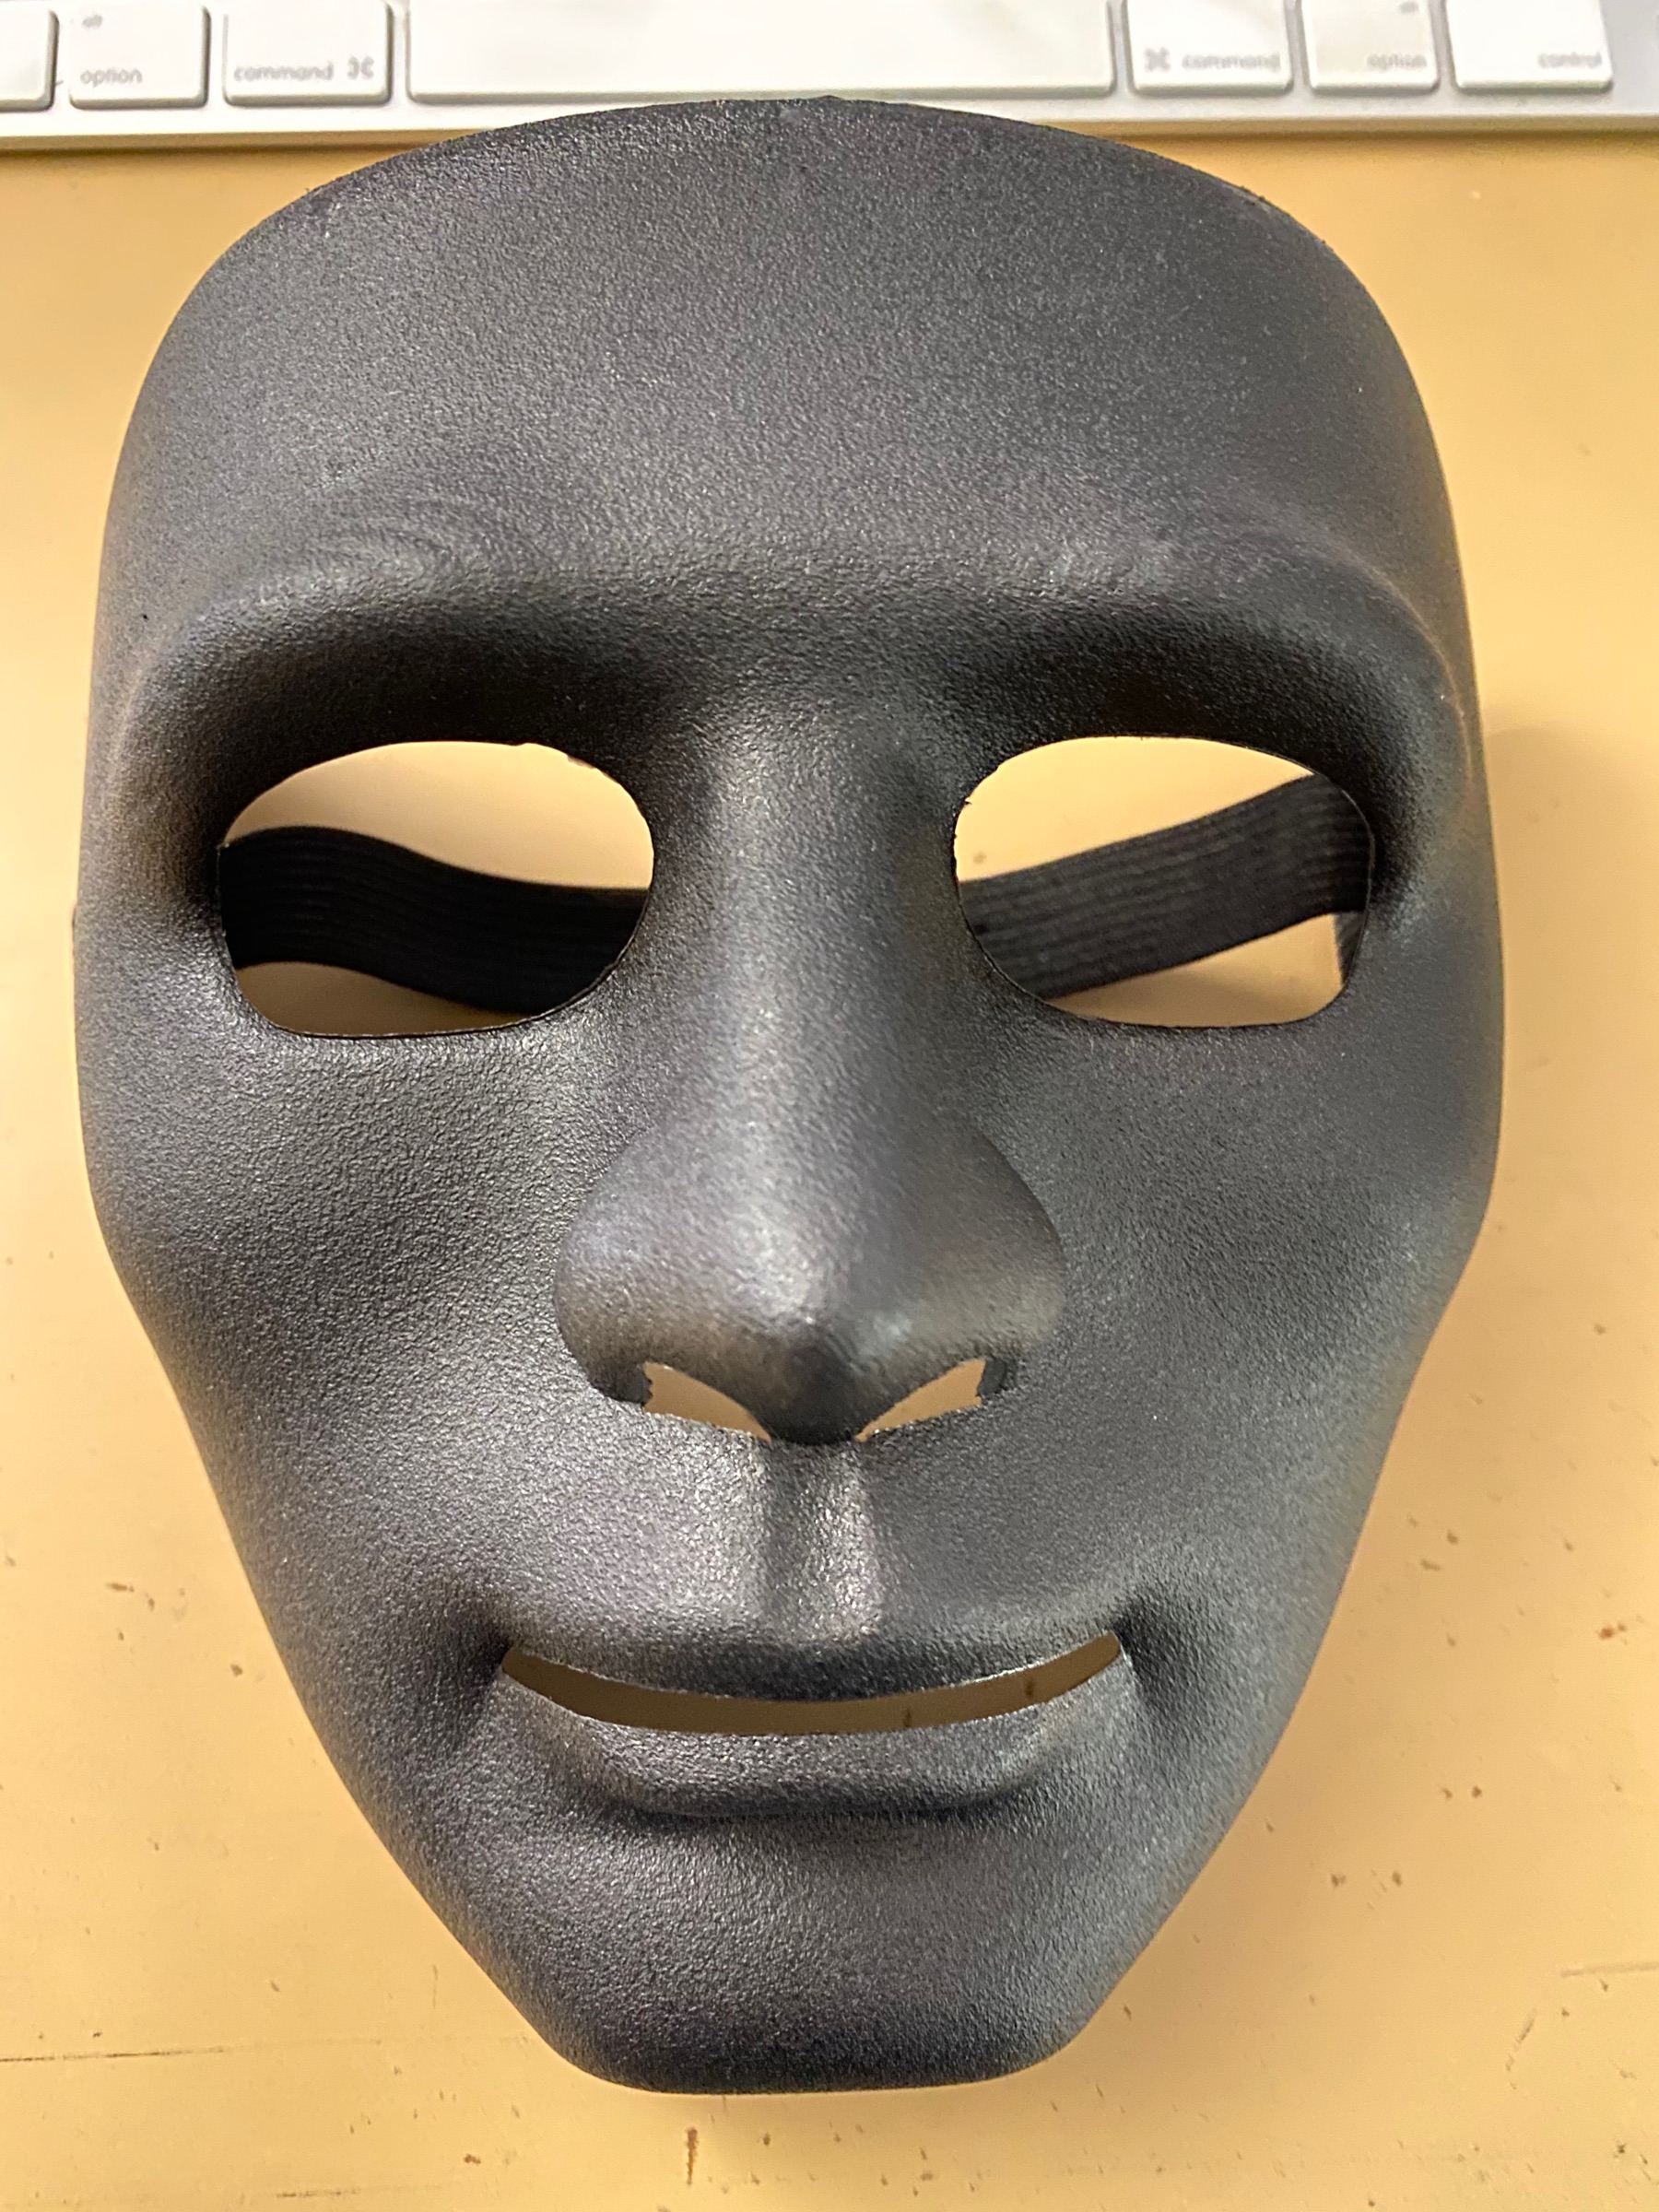 The base mask.